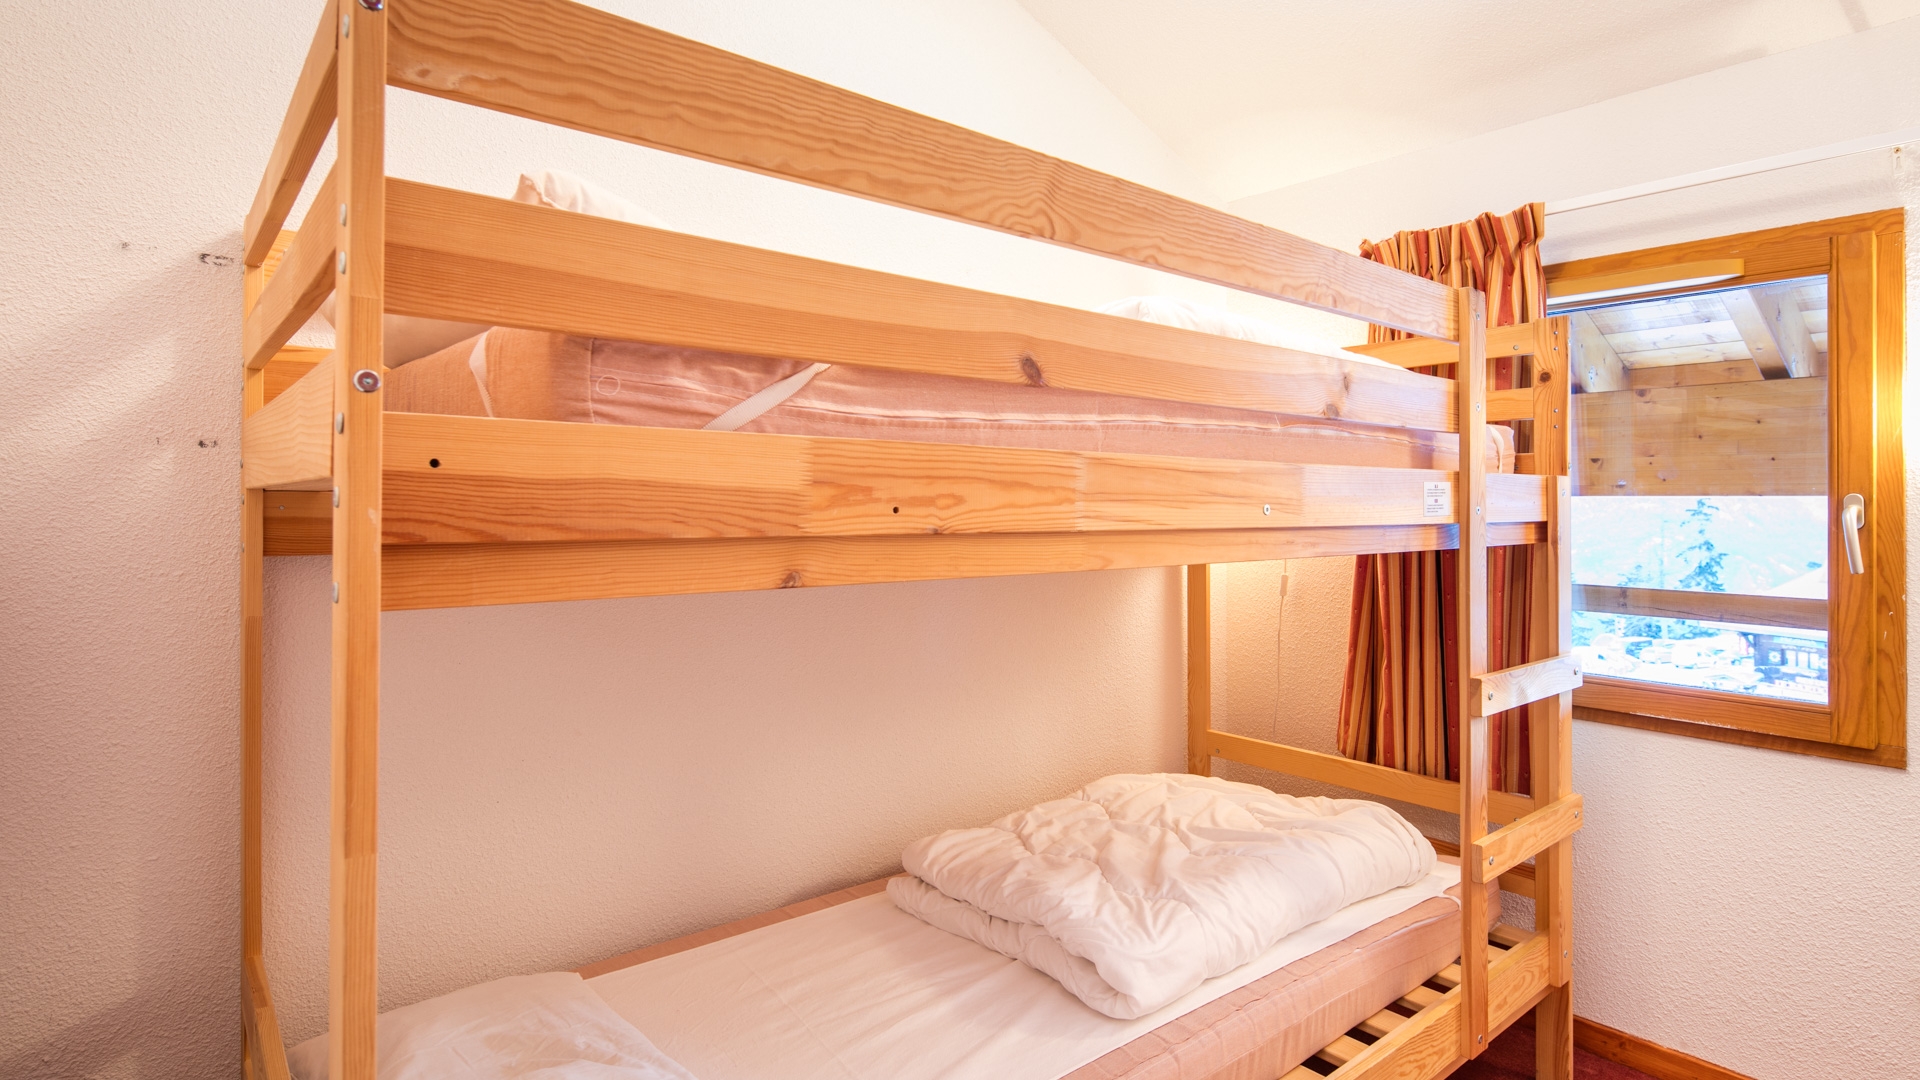 Les Chalets de la Ramoure in Valfréjus: Ferienwohnung für 6 Personen: Schlafzimmer (Beispiel)